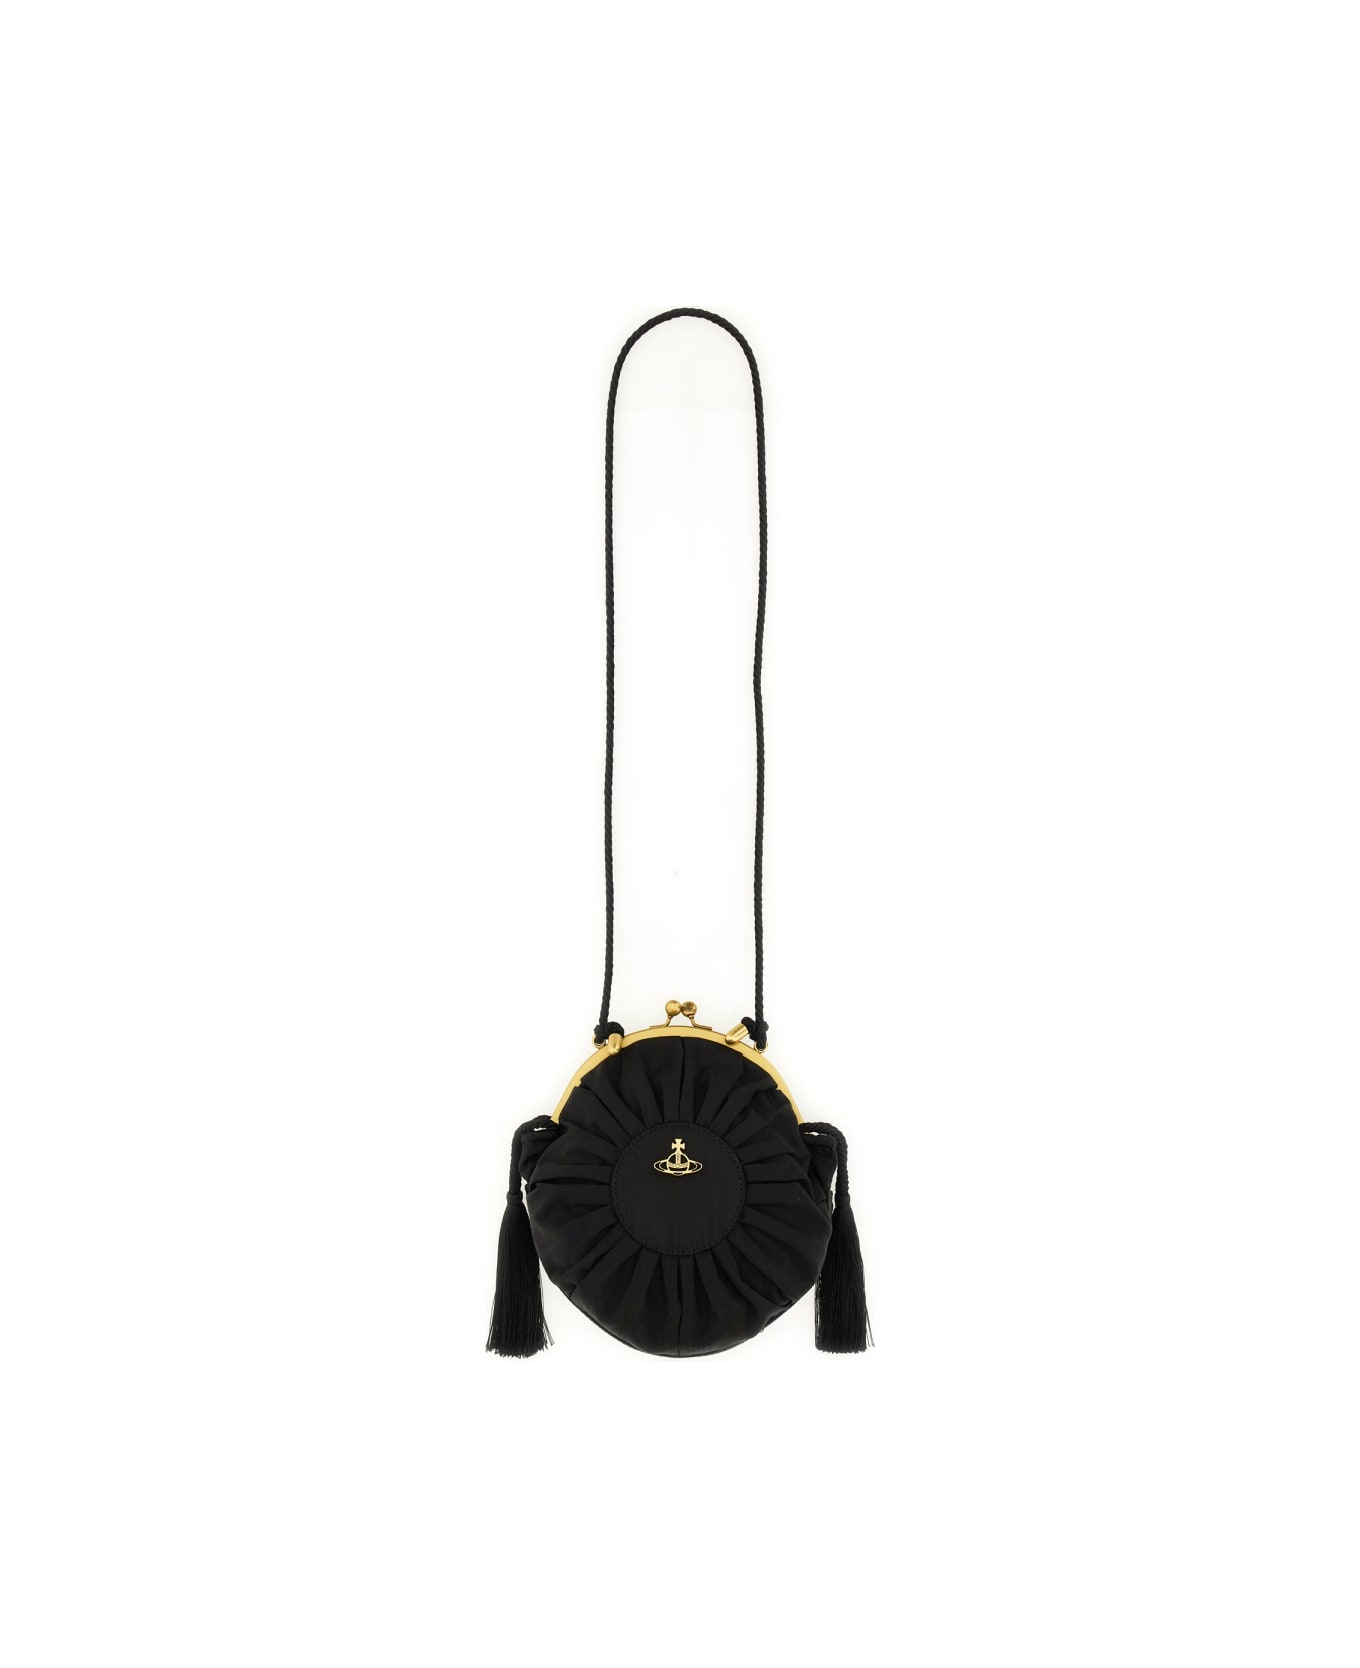 Vivienne Westwood Bag "rosie" - BLACK